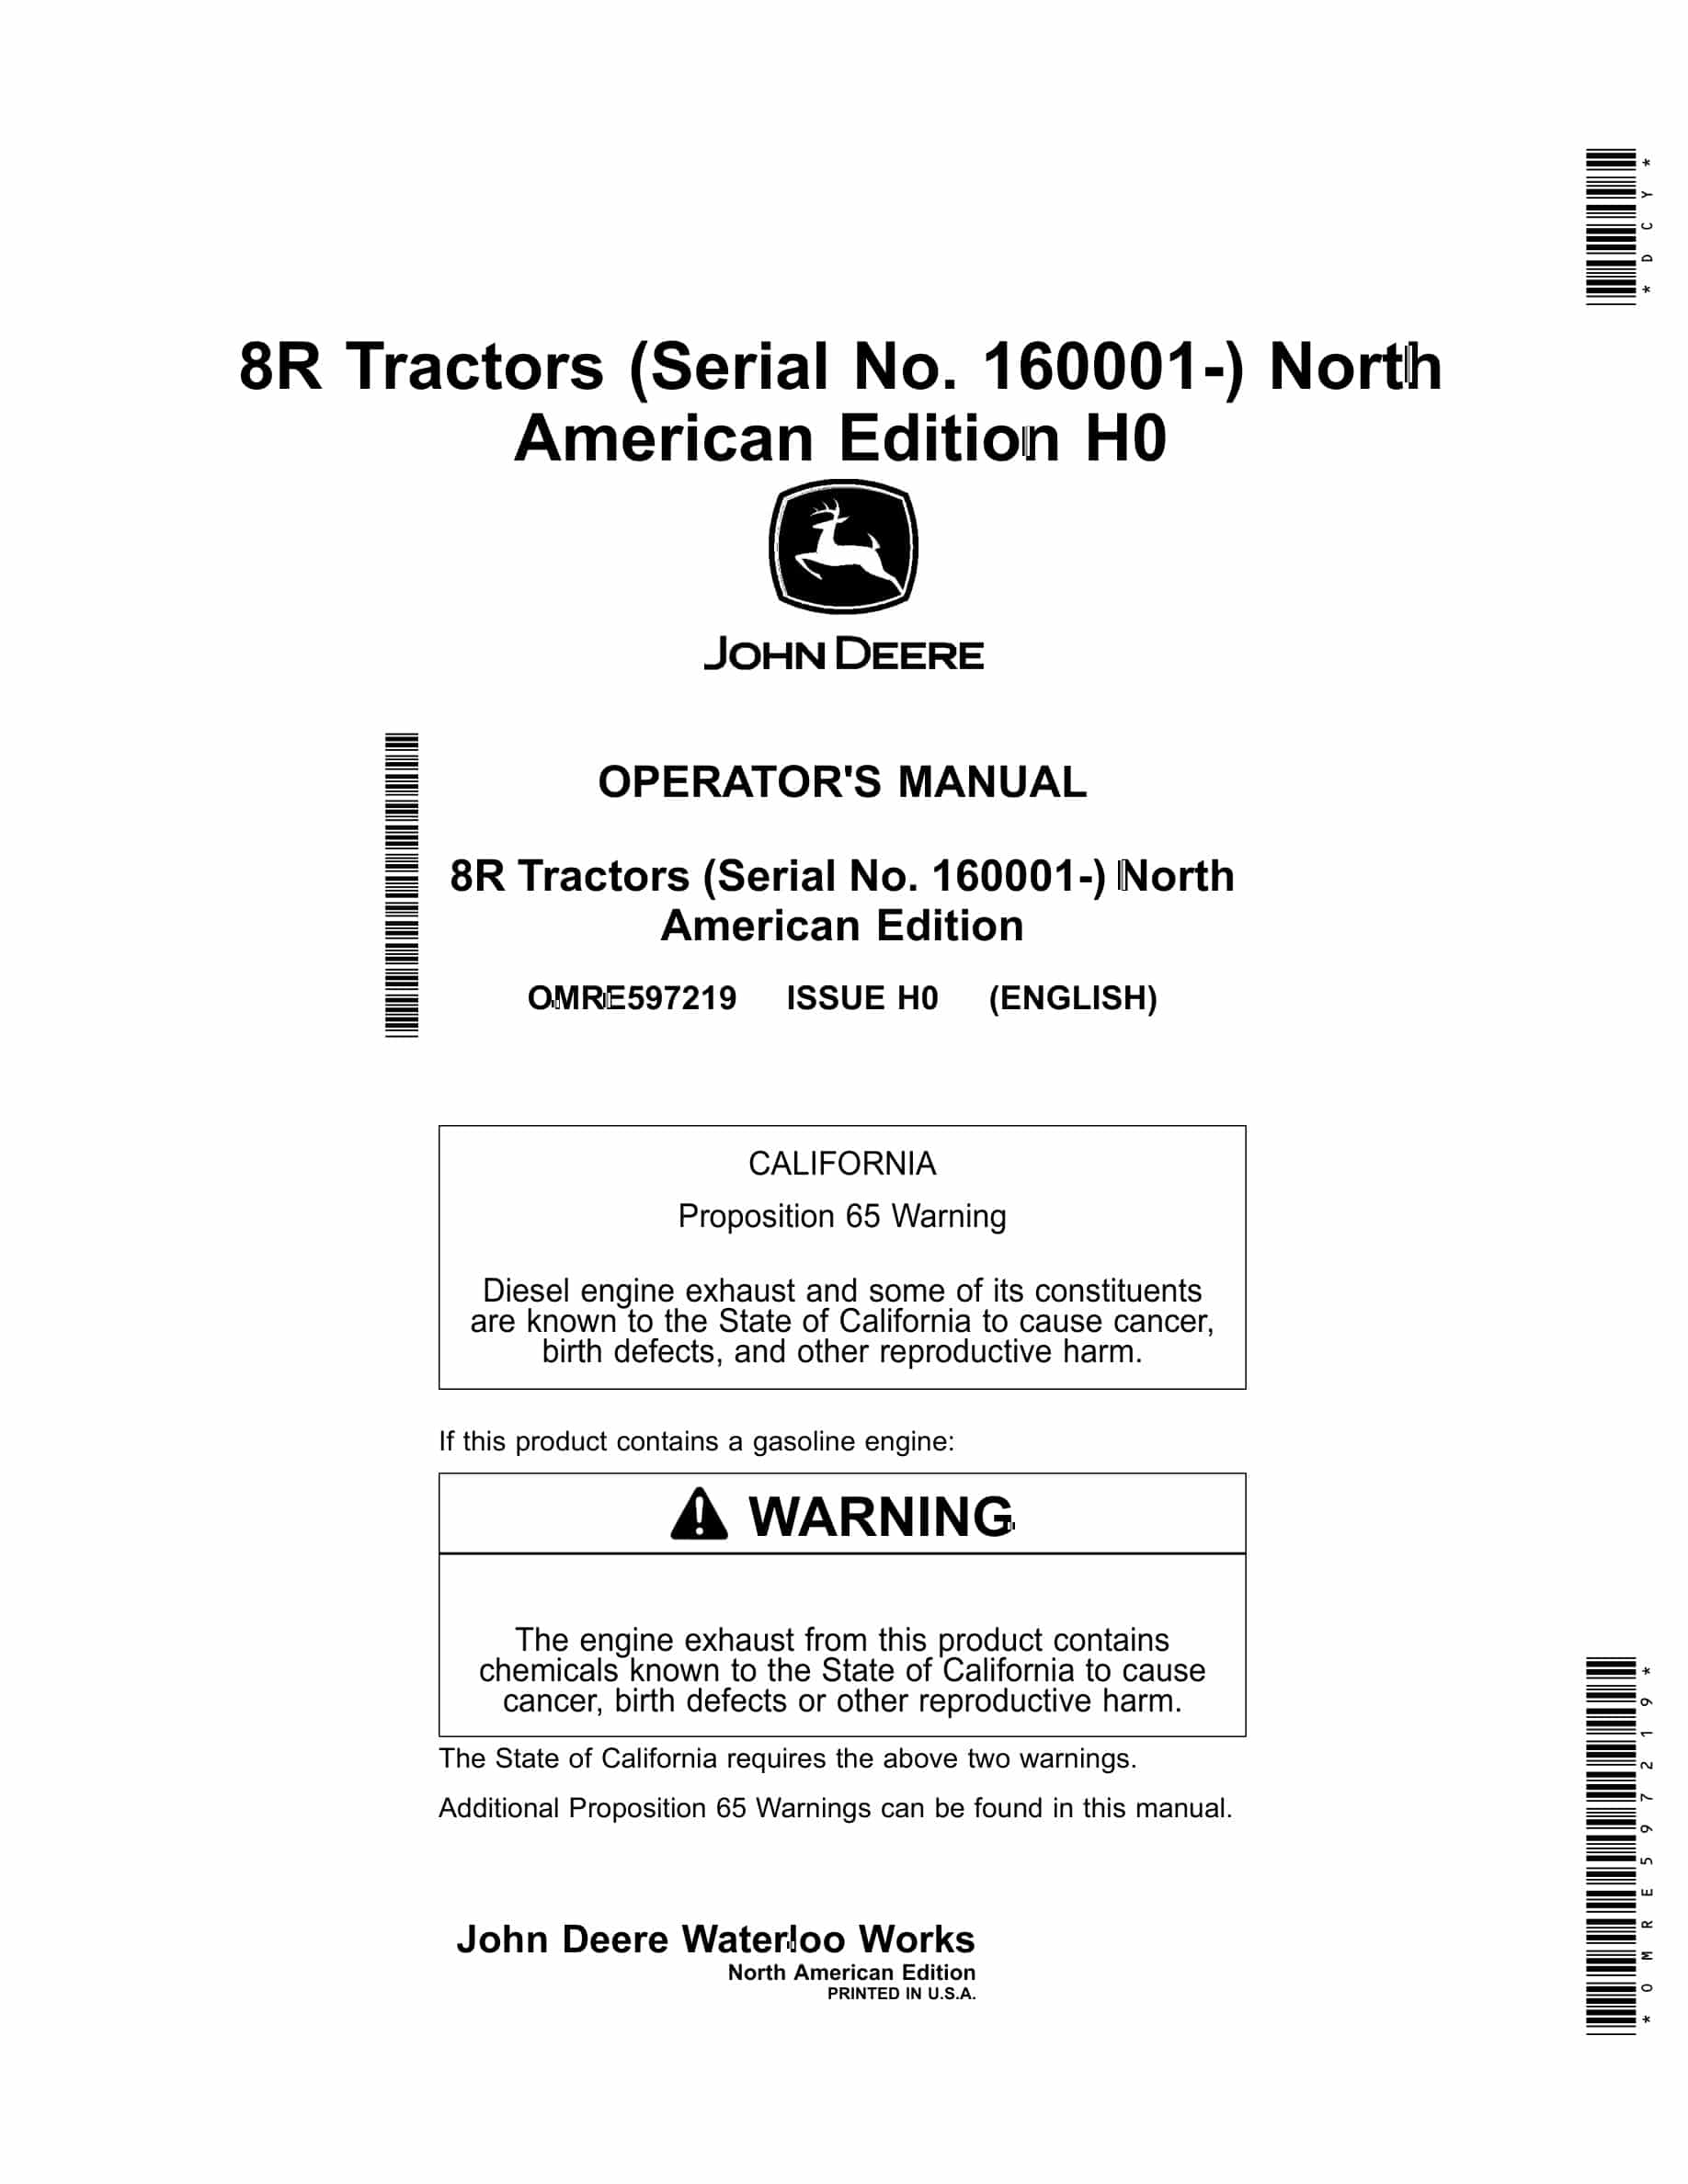 John Deere 8R Tractor Operator Manual OMRE597219-1